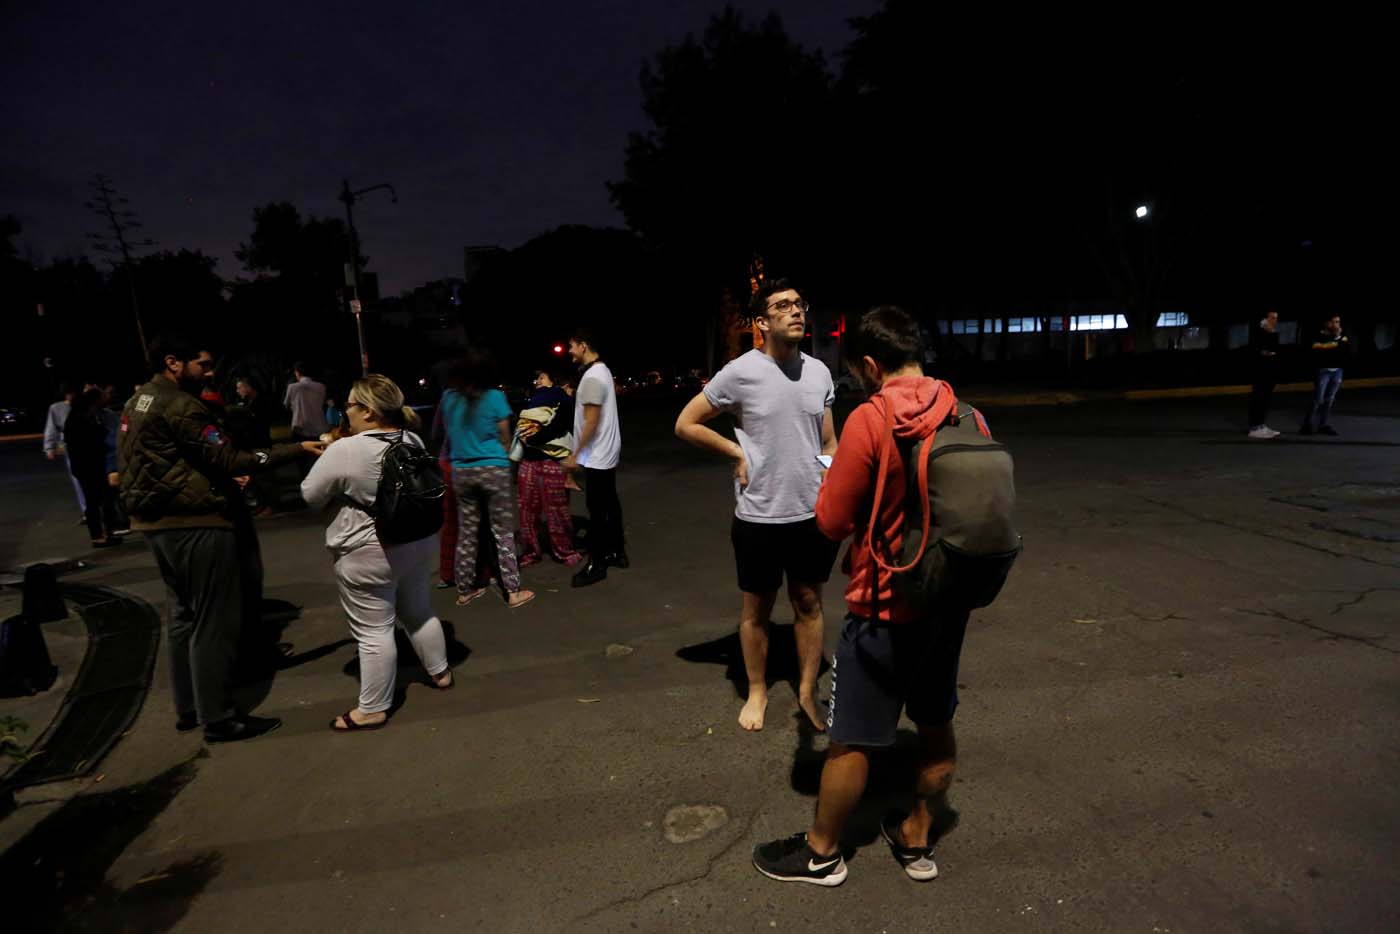 Personas se reúnen en una calle después de que un terremoto sacudió a Ciudad de México, la noche del 7 de septiembre del 2017. REUTERS/Claudia Daut